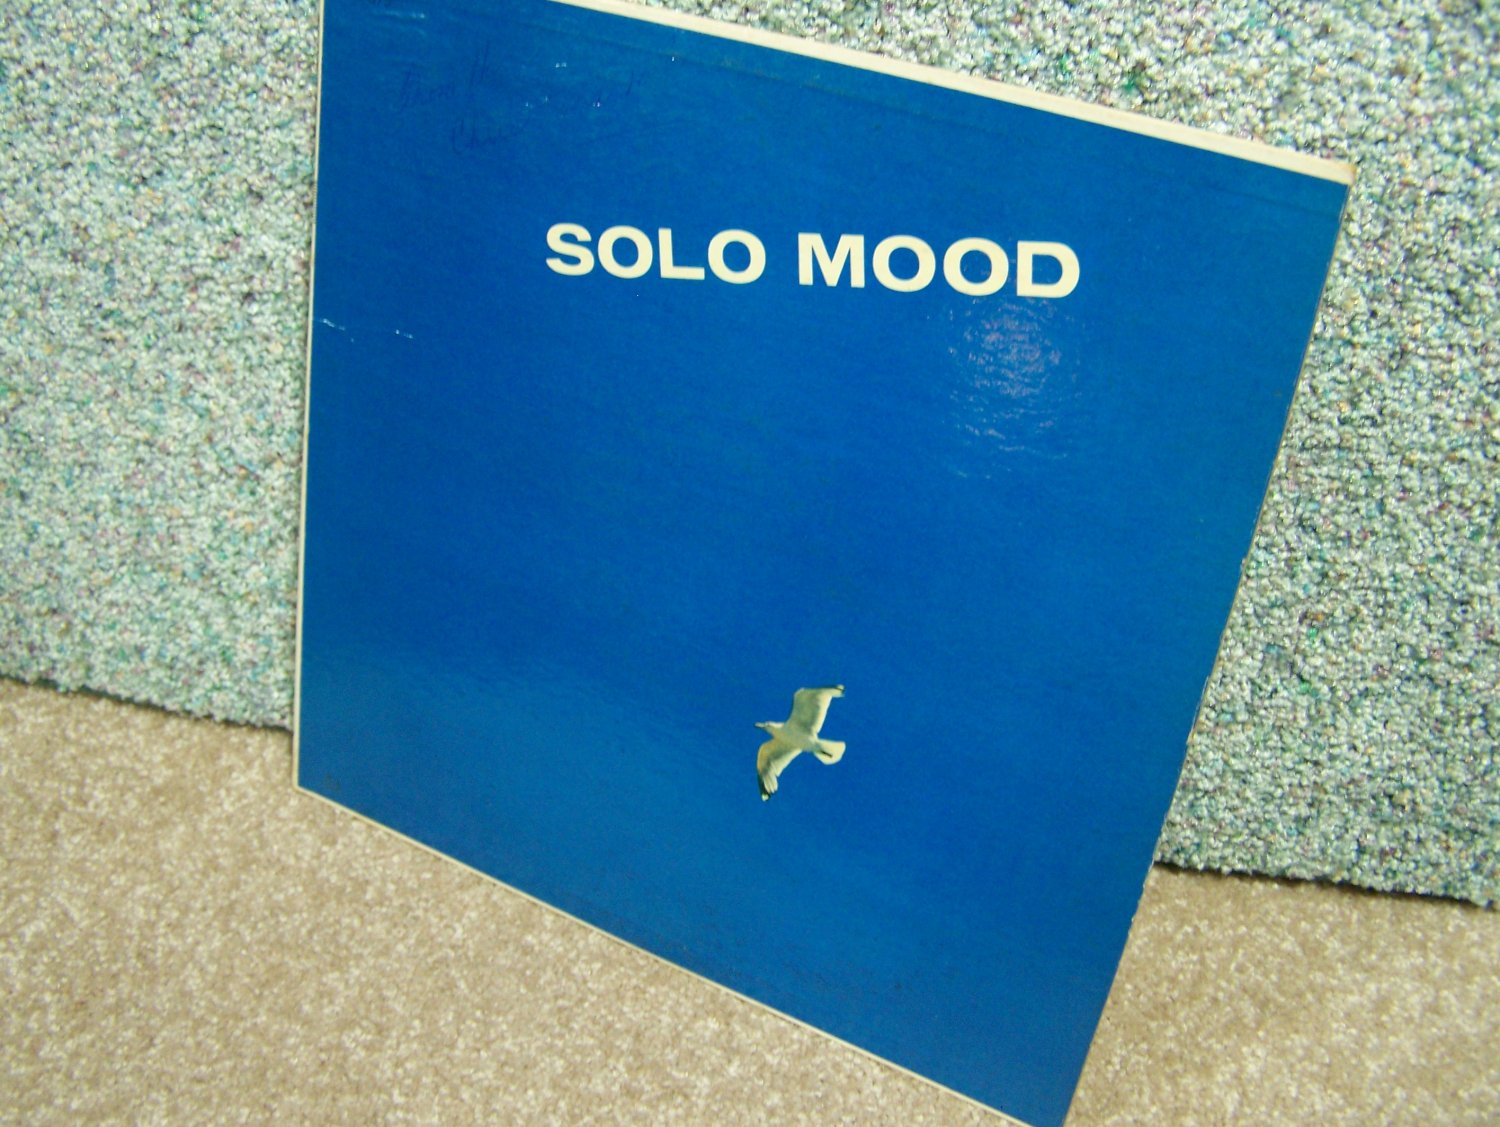 Solo Mood by Paul Weston